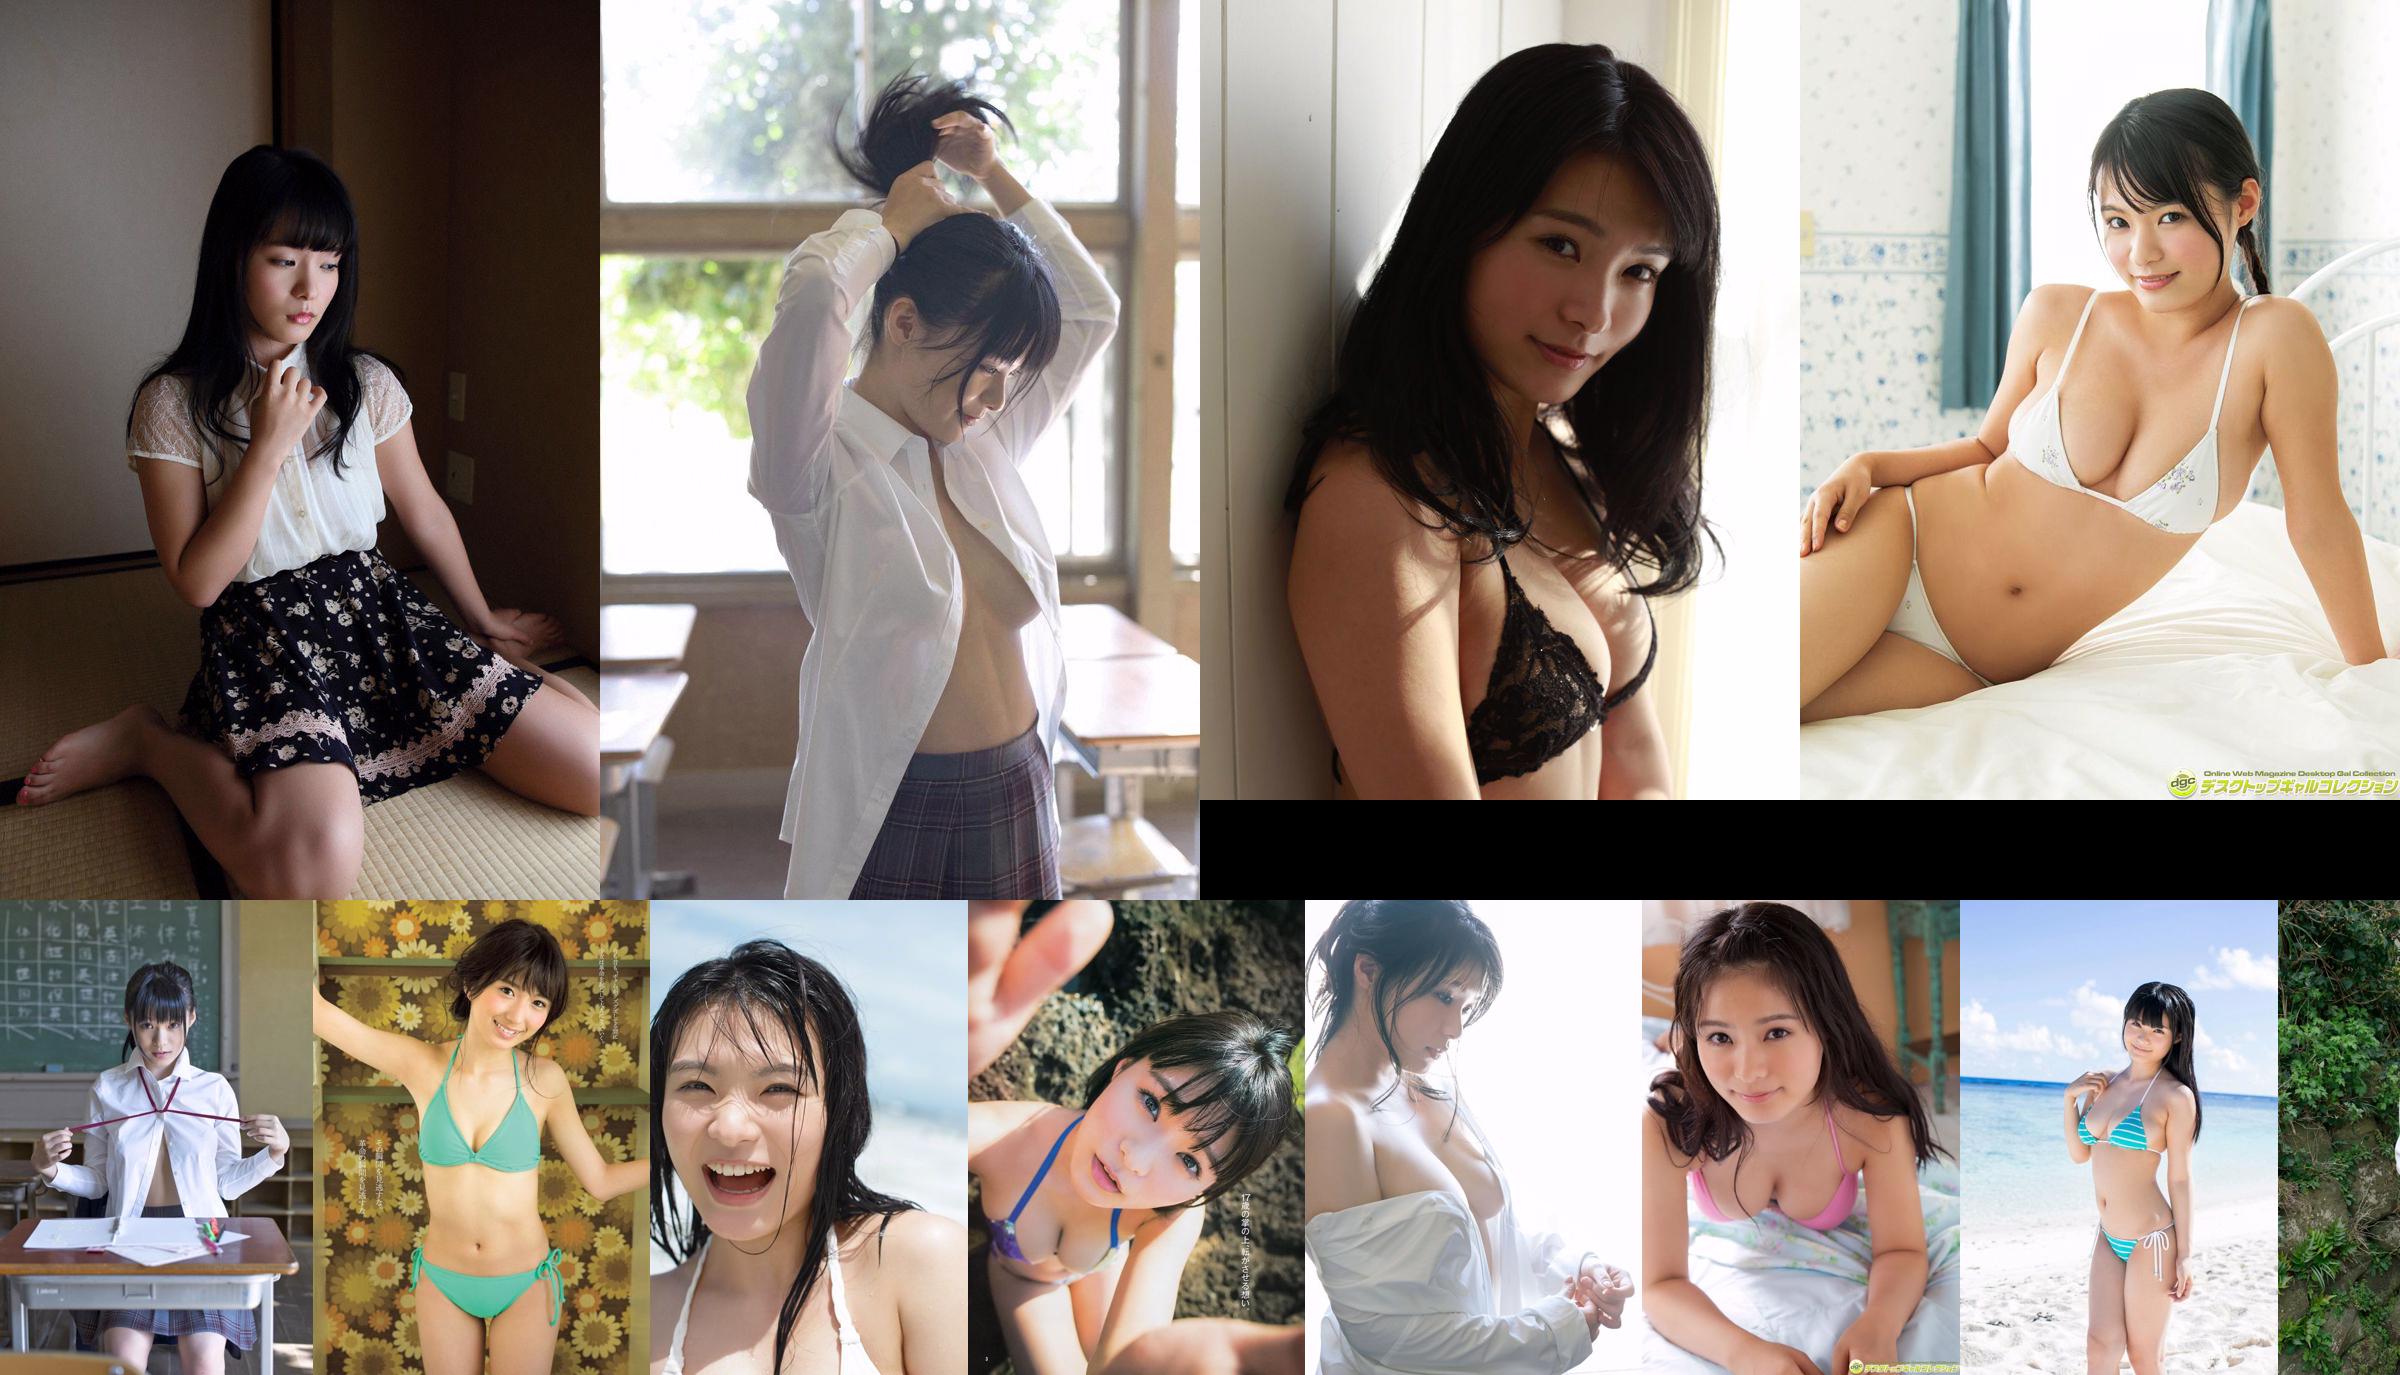 Hoshina Mizuki "NEW STAR GIRL" [Sabra.net] Cover Girl No.4e97b9 Page 2